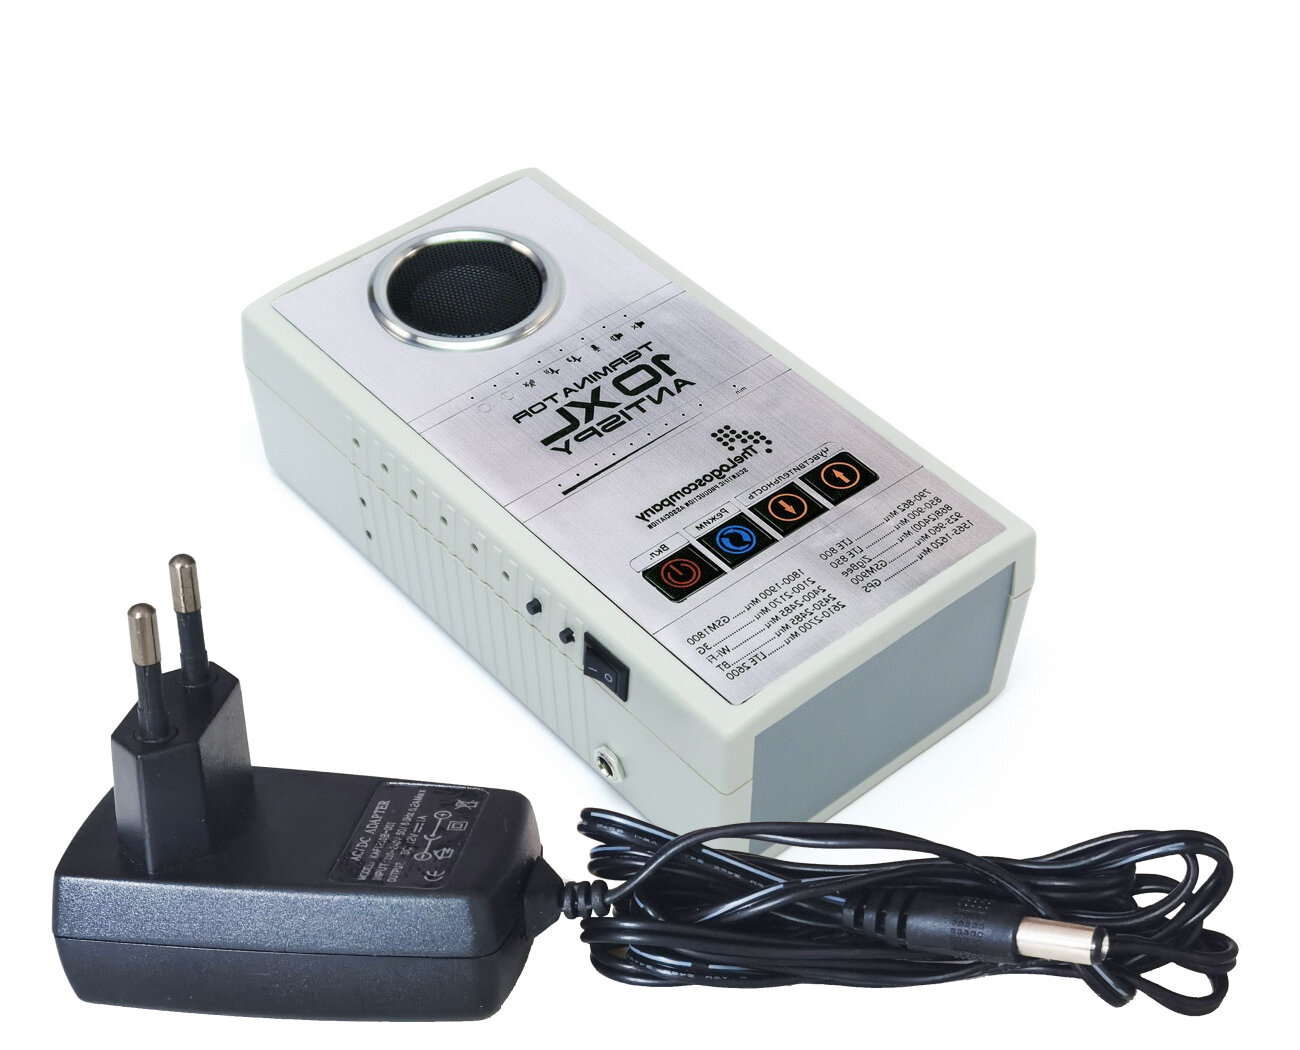 Детектор жучков Терминатор-10XL-M-AntiSpy (S19195MOD) - прибор для обнаружения и подавления прослушки и жучков, детектор - скрытых камер